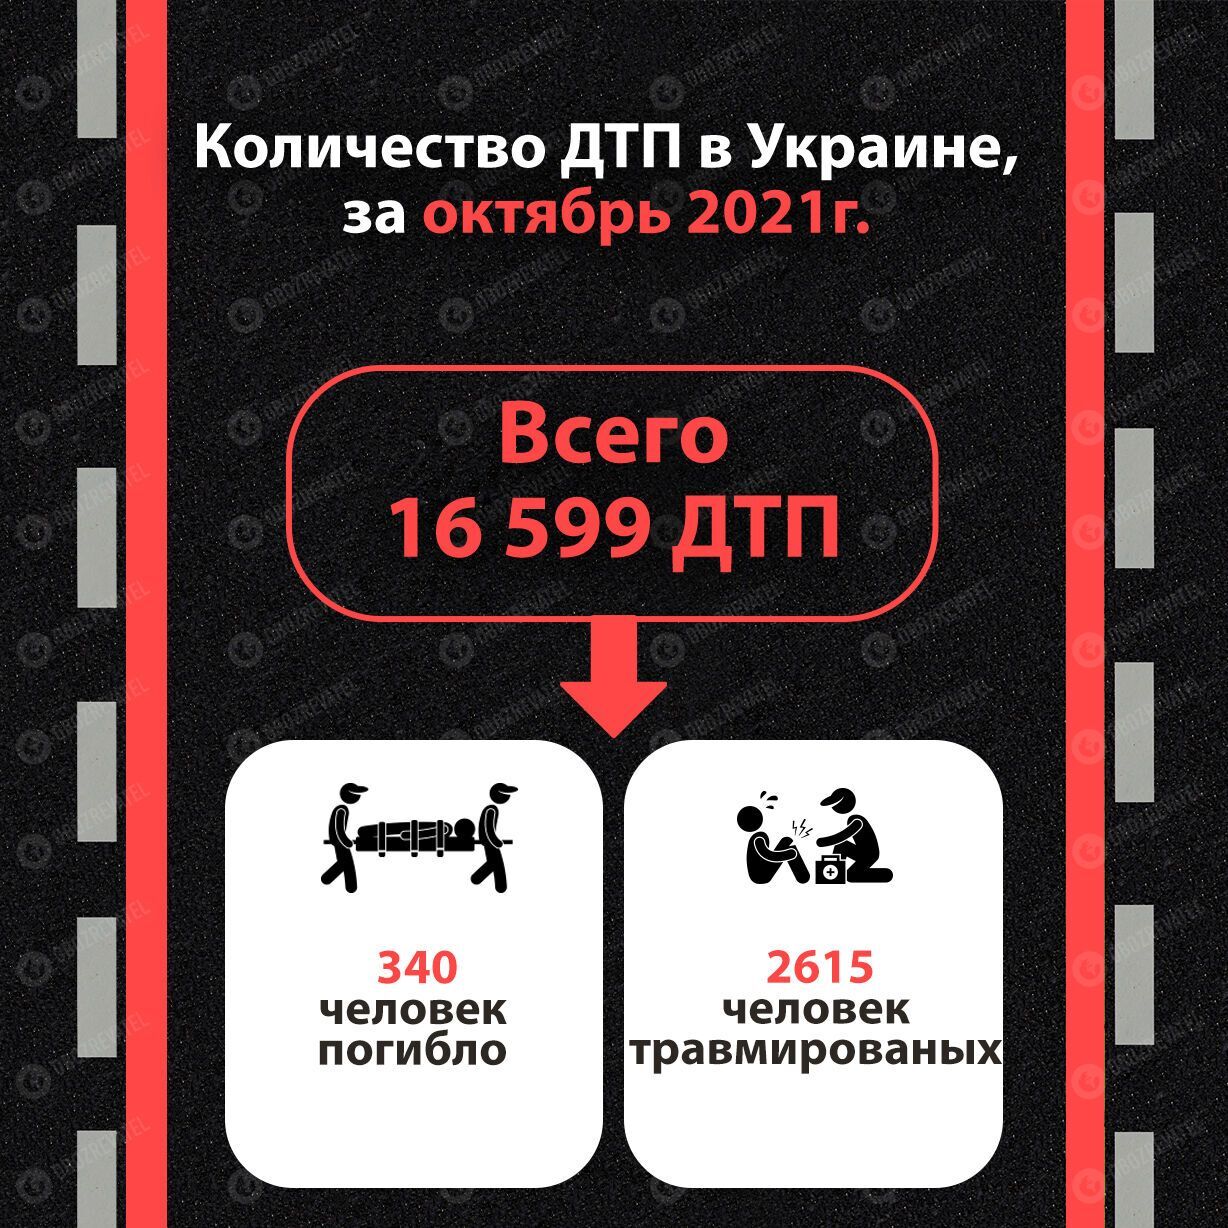 Статистика ДТП в Украине за октябрь 2021